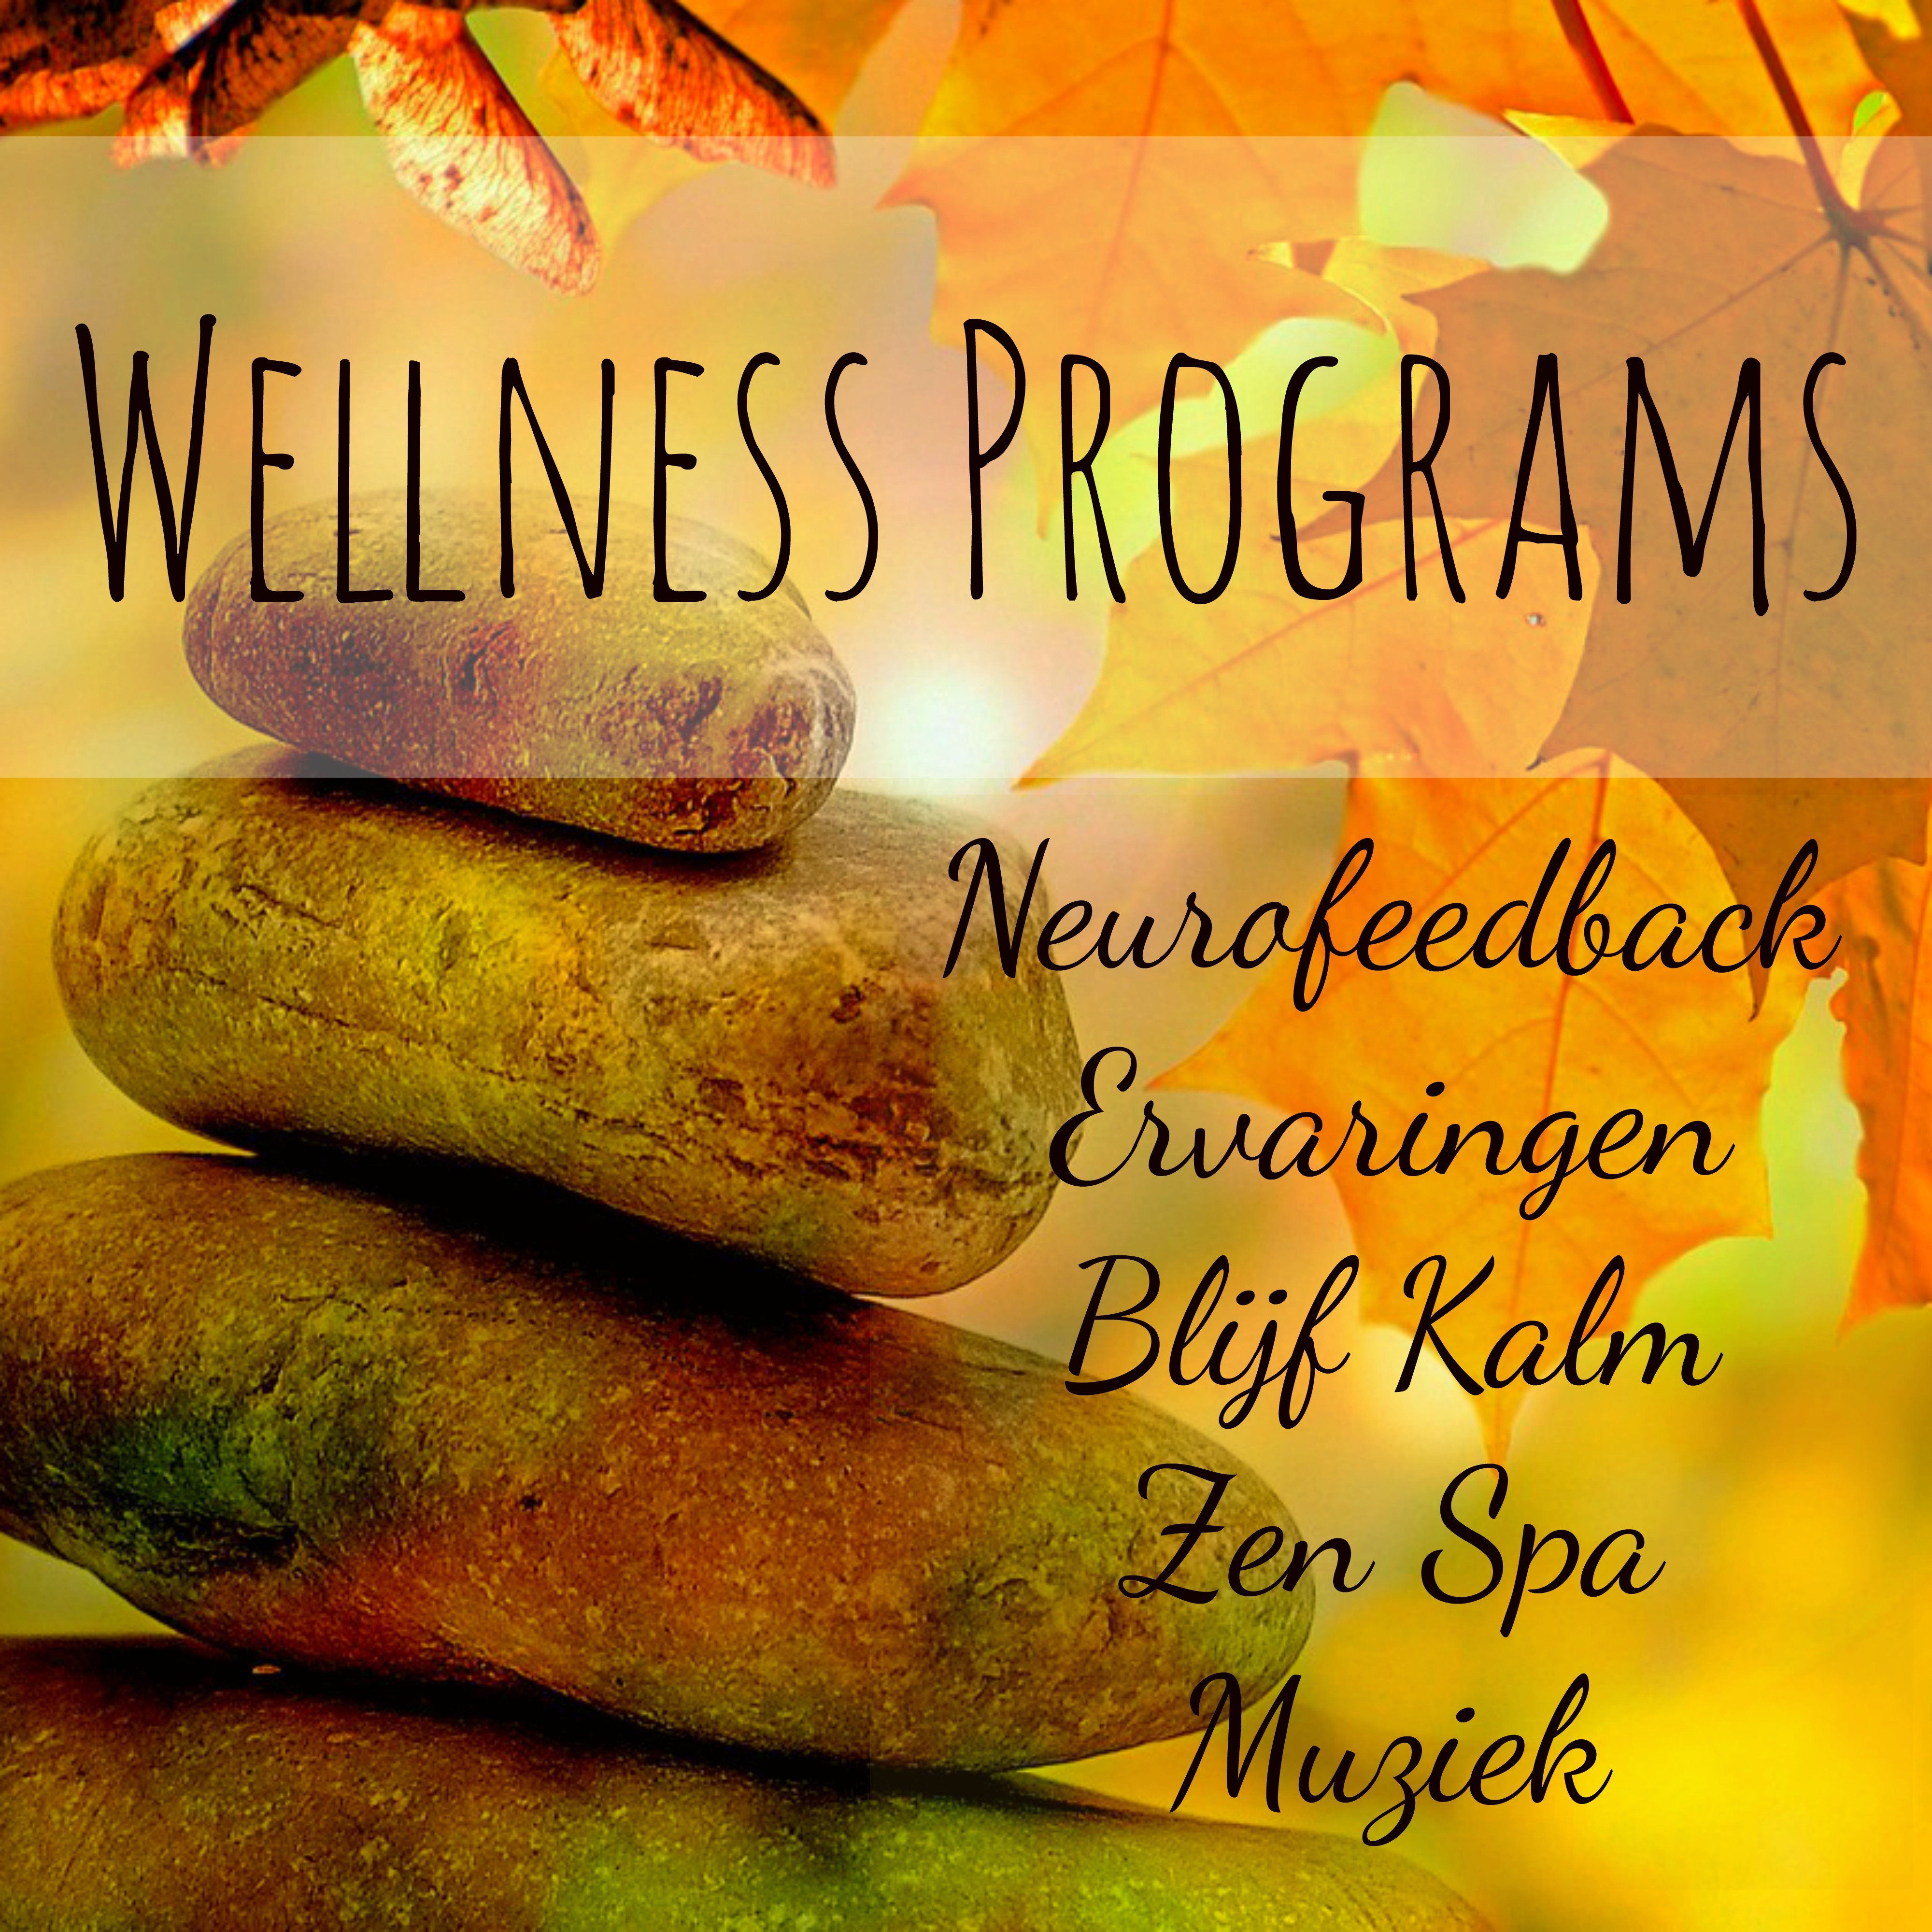 Wellness Programs - Neurofeedback Ervaringen Blijf Kalm Zen Spa Muziek voor Mentale Training Oefeningen Reiki Therapie met Natuur Instrumentale Genezing Geluiden